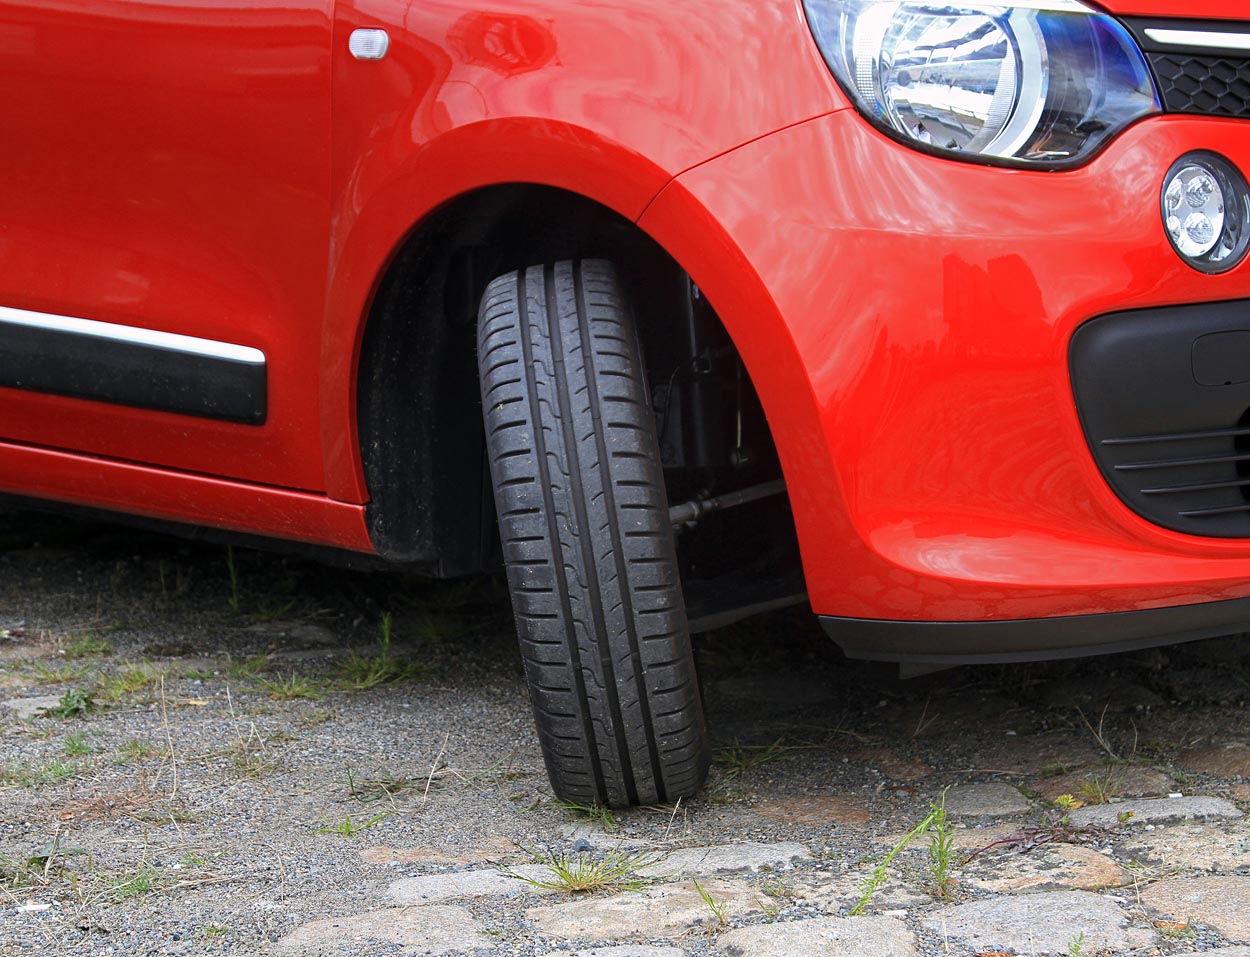 Forhjulene kan drejes 45 grader, så Renault Twingo har en ualmindelig lille vendediameter  8,60 m mellem kantsten.